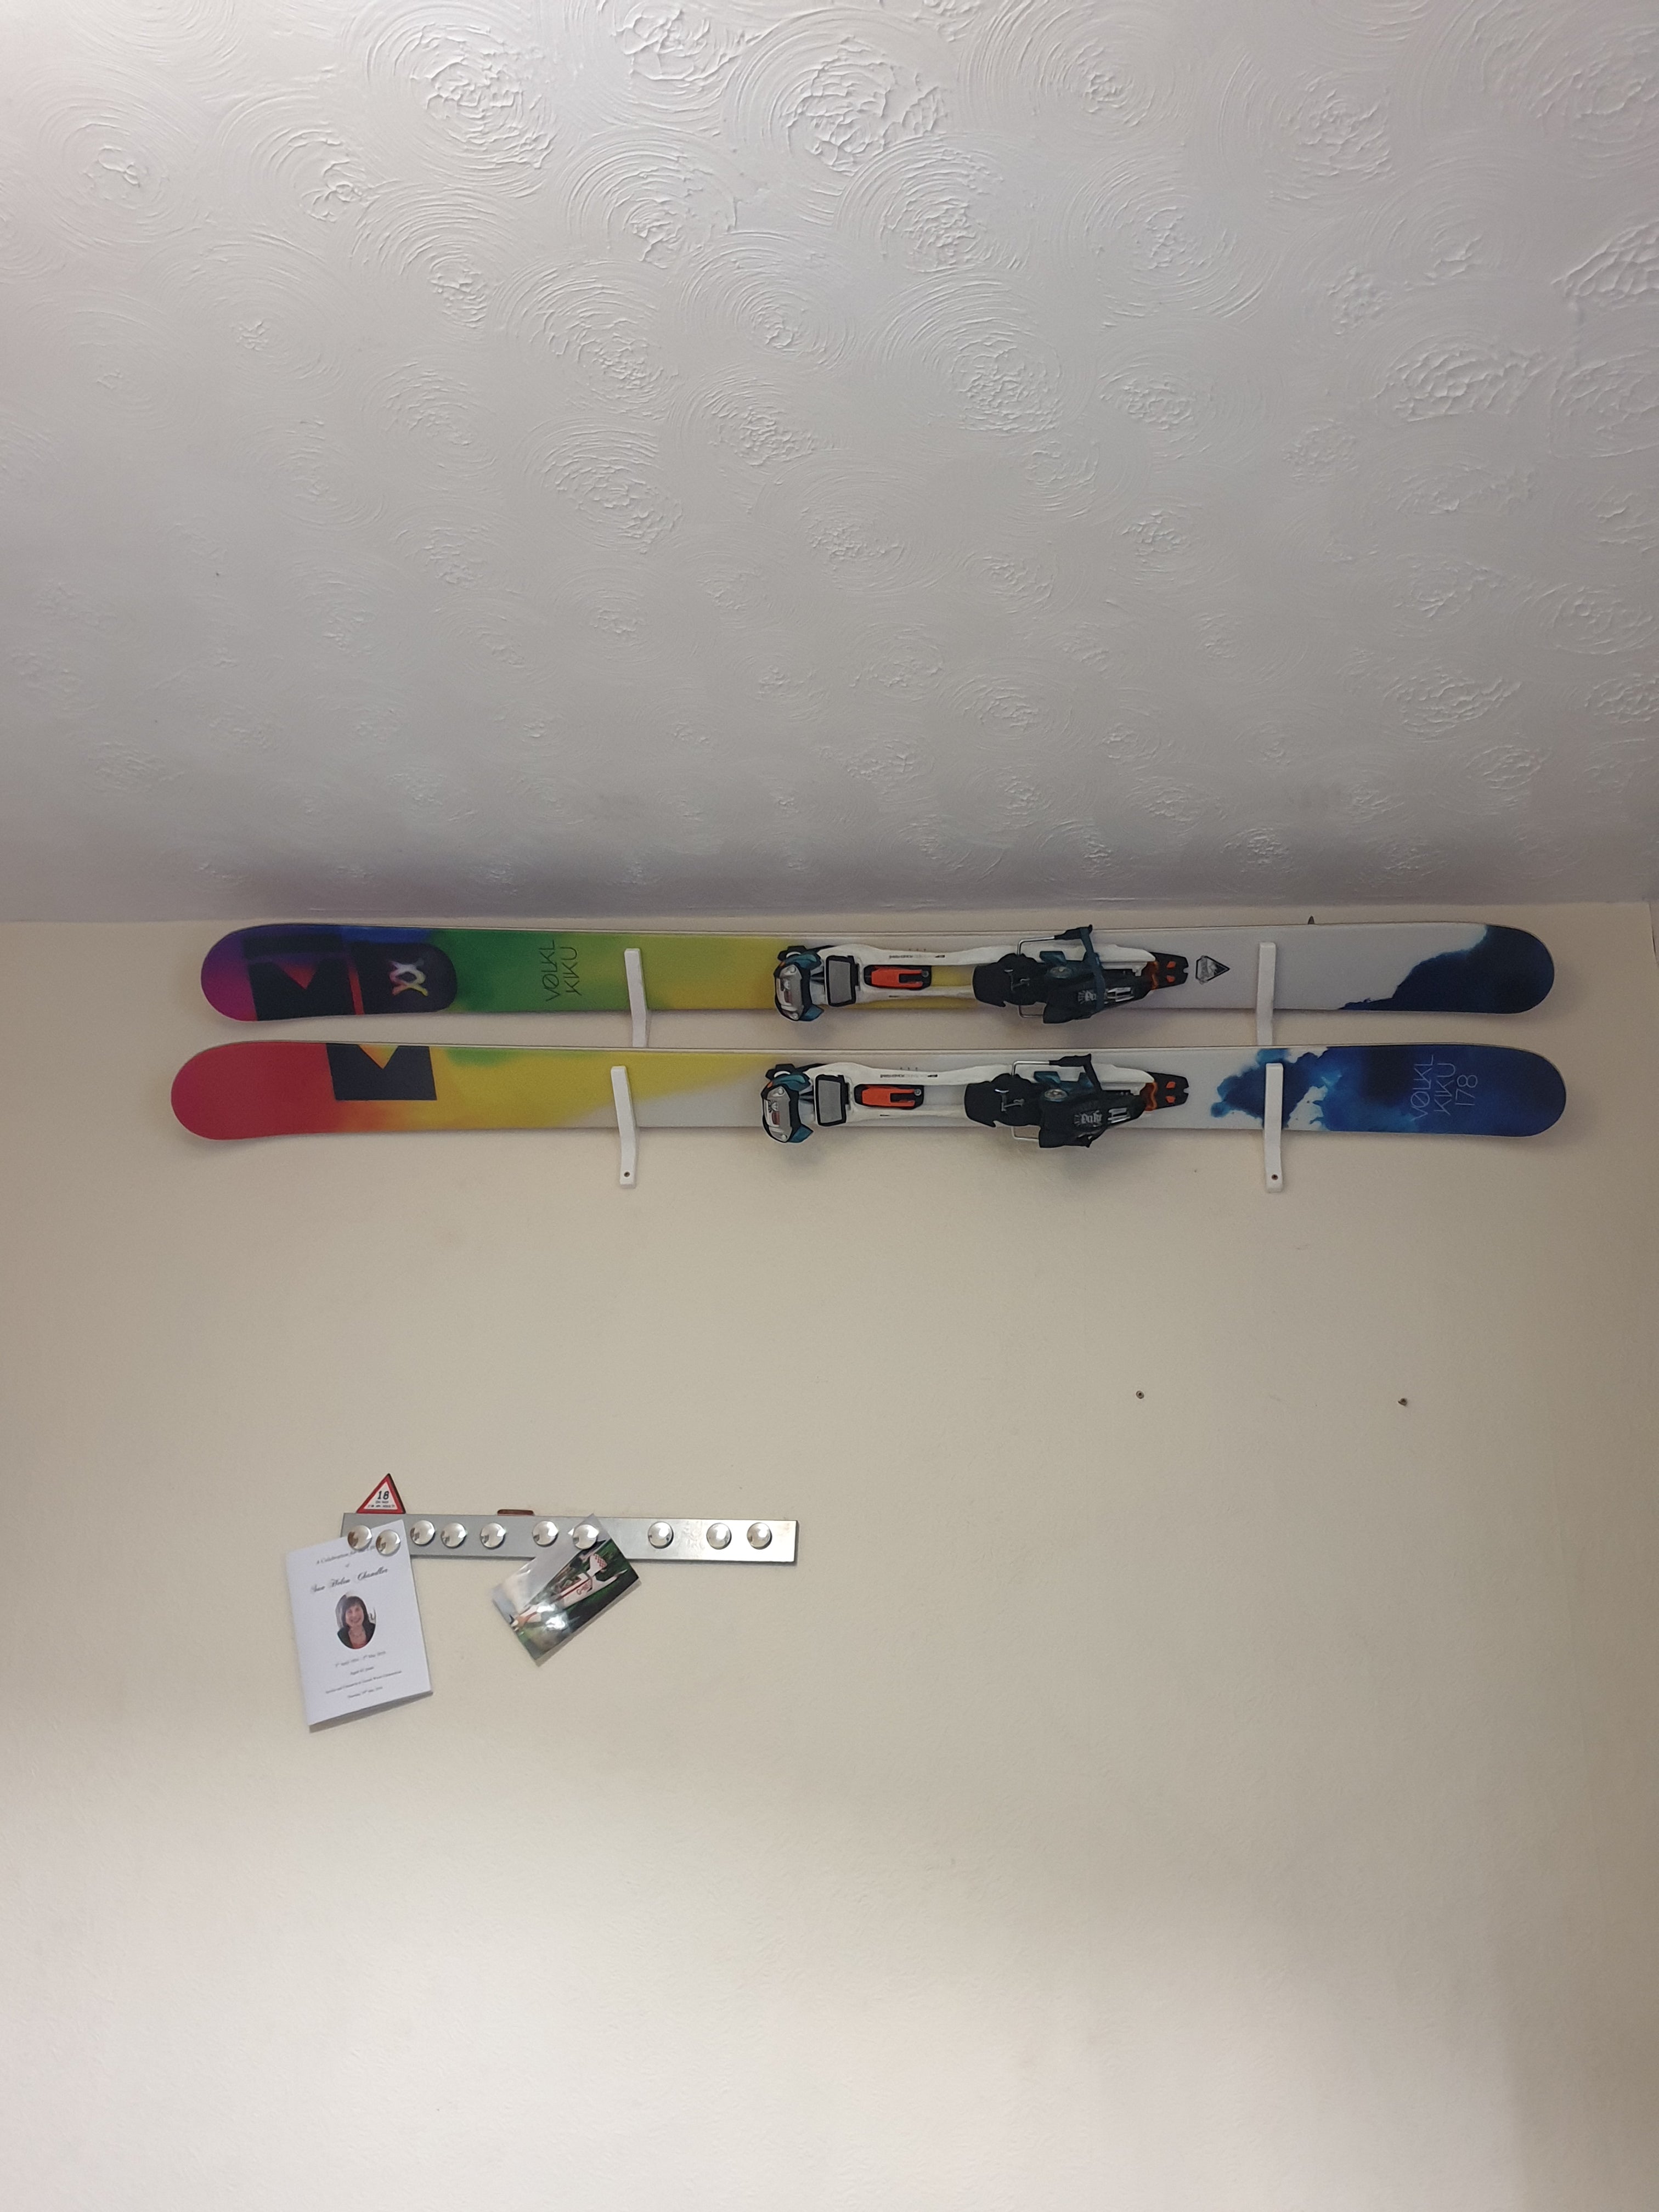 Angled Ski Wall Mount for Storage and Display